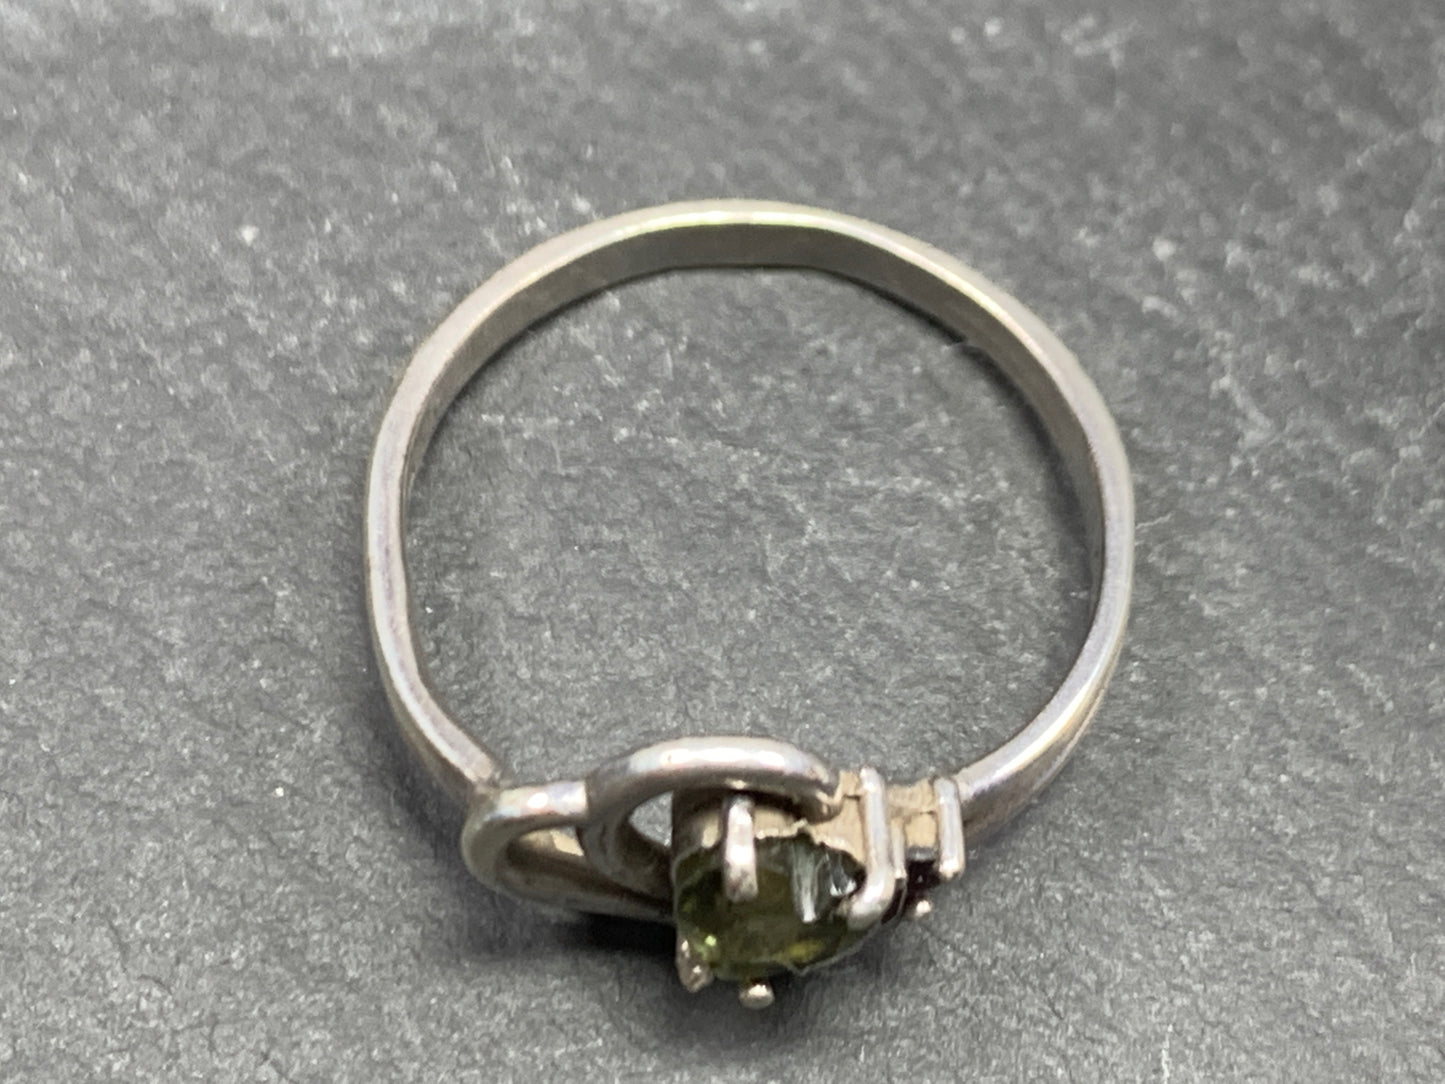 Moldavite & Garnet ring size 7.25